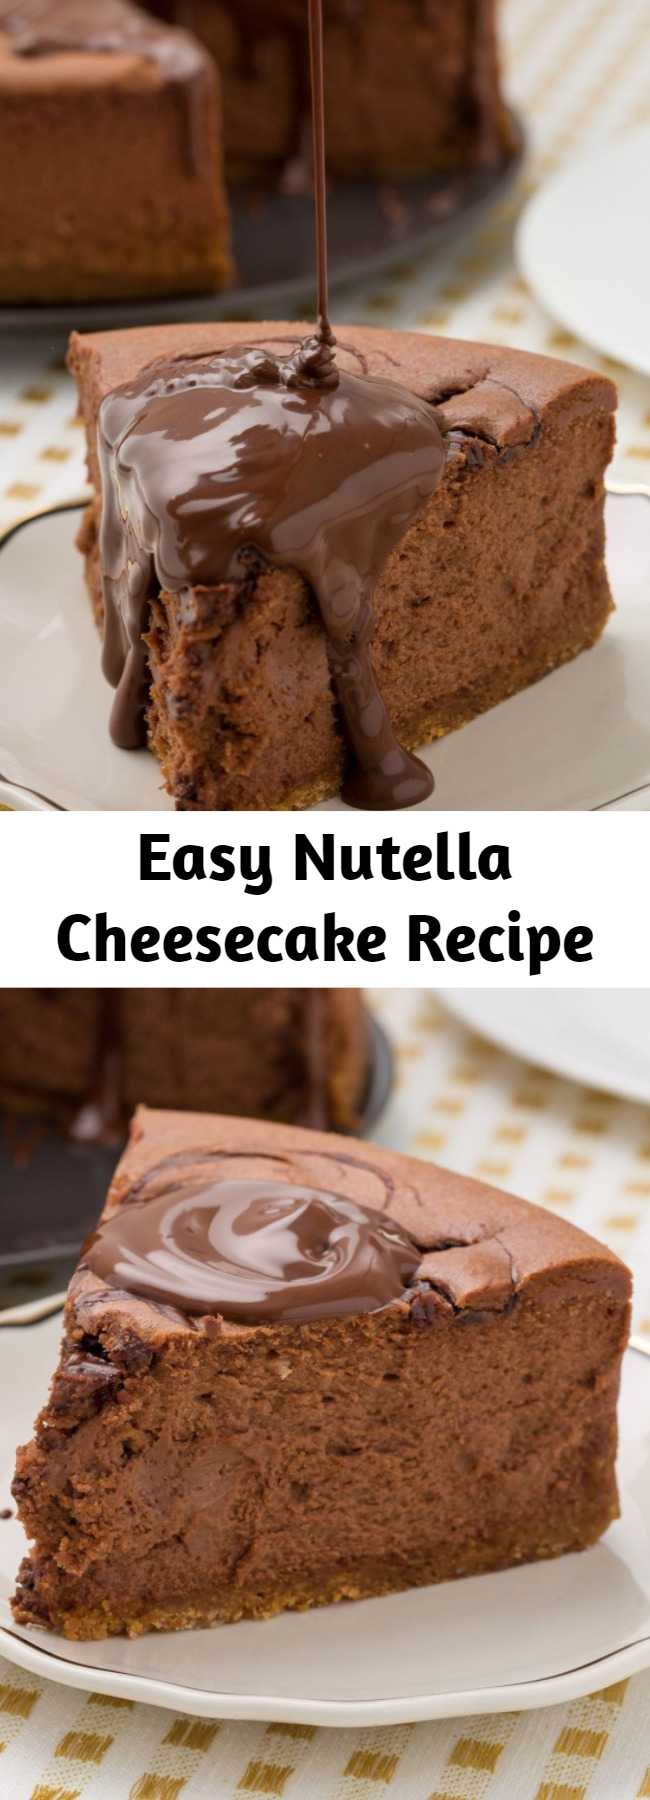 Easy Nutella Cheesecake Recipe - Nutella? Good. Nutella cheesecake? Even better.